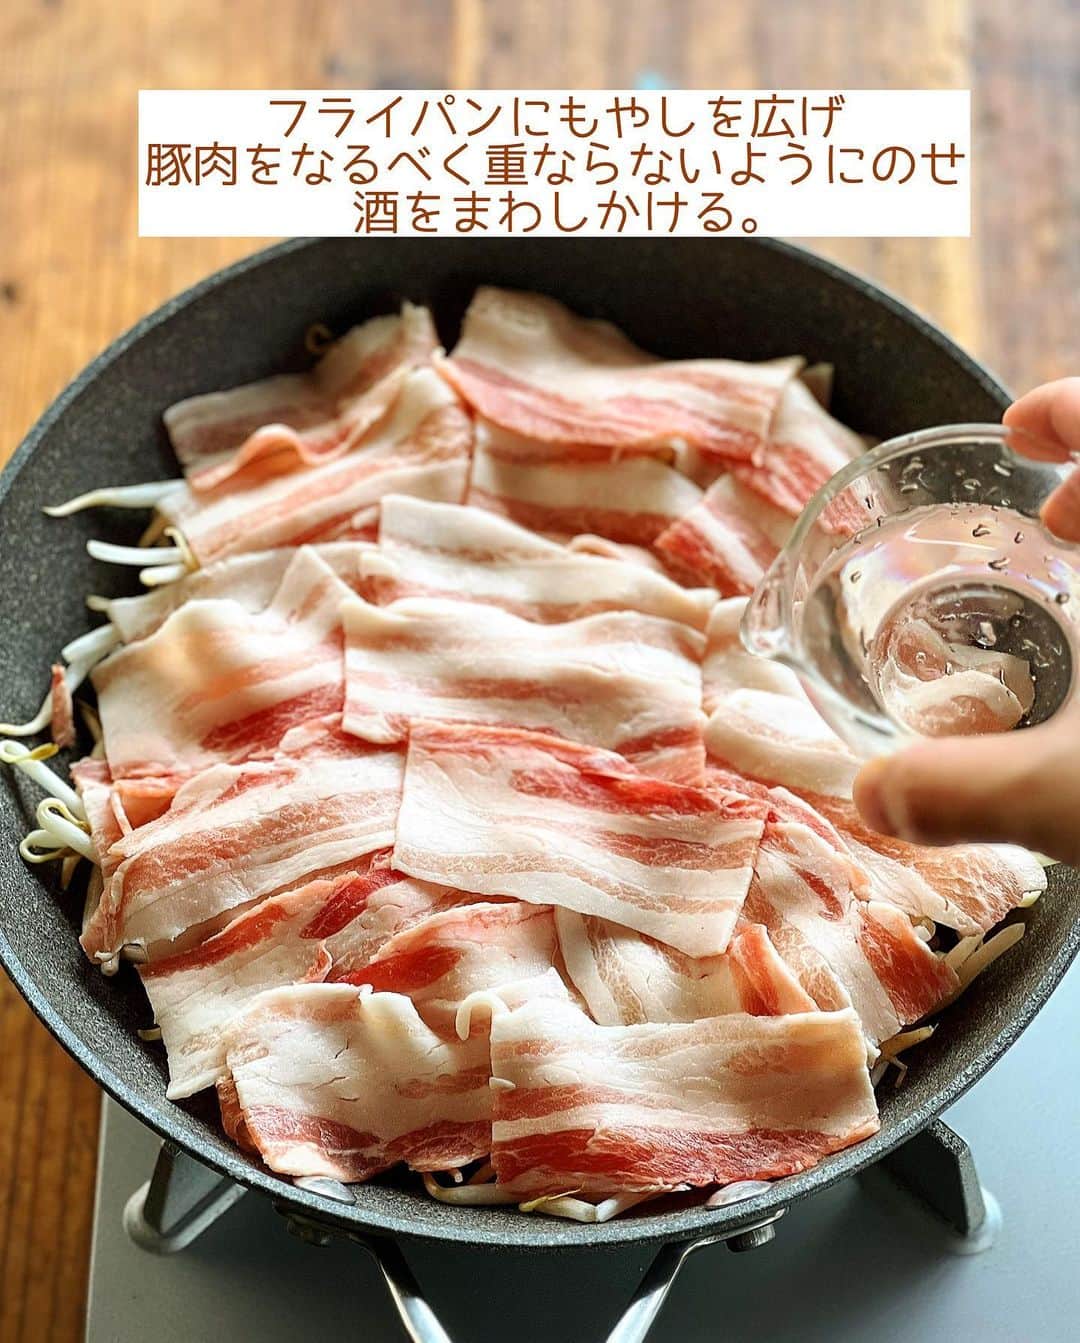 Mizuki【料理ブロガー・簡単レシピ】さんのインスタグラム写真 - (Mizuki【料理ブロガー・簡単レシピ】Instagram)「・フライパン放置で完成🍳 ⁡ ［#レシピ ］ ーーーーーーーーーーーーーーーーーーーー ごまだれで！豚バラもやしのフライパン蒸し ーーーーーーーーーーーーーーーーーーーー ⁡ ⁡ ⁡ おはようございます☺️ ⁡ 昨日リールでご紹介したレシピの 静止画バージョンです✨ ⁡ ⁡ ▼ ▼ ▼ ▼ ▼ ▼ ⁡ ⁡ ほったらかし🤭 \ 豚バラもやしのフライパン蒸し / ⁡ 豚バラ×もやしでコスパ抜群💕 材料入れたら放置で完成！の 超簡単ヘルシーレシピです✨ お酒で蒸すと香りがよくなり お肉がやわらか〜く仕上がりますよ♩ ⁡ ごまだれもおいしいので よかったらお試し下さいね😋 ⁡ ⁡ ⁡ ⋱⋰ ⋱⋰ ⋱⋰ ⋱⋰ ⋱⋰ ⋱⋰ ⋱⋰ 📍簡単・時短・節約レシピ更新中  #Threads もこちらから▼ @mizuki_31cafe ⁡ 📍謎の暮らし＆変なライブ垢 @mizuki_kurashi ⋱⋰ ⋱⋰ ⋱⋰ ⋱⋰ ⋱⋰ ⋱⋰ ⋱⋰ ⁡ ⁡ ⁡ ＿＿＿＿＿＿＿＿＿＿＿＿＿＿＿＿＿＿＿ 【2人分】 豚バラ薄切り肉...150g もやし...1袋(200g) 酒...大2 ●すりごま...大2 ●醤油...大1.5 ●酢...大1 ●砂糖・ごま油...小2 ねぎ(小口切り)...適量 ⁡ 1.●を合わせてごまだれを作る。豚肉は7cm長さに切る。 2.フライパンにもやしを広げ、豚肉をなるべく重ならないようにのせ、酒を振る。 3.蓋をして中火にかけ、7分程蒸し焼きにし、火が通ったら1のごまだれとねぎをかけて食べる。 ￣￣￣￣￣￣￣￣￣￣￣￣￣￣￣￣￣￣￣ ⁡ ⁡ 《ポイント》 ♦︎直径26cmのフライパンを使用しています♩ ♦︎豚肉はなるべく重ならないように広げてのせてください♩ ♦︎今回はごまだれをかけましたが、ポン酢をかけるだけでもおいしいです♩ ⁡ ⁡ ⁡ ⁡ ⁡ ⁡ 💬 #Threads はじめました📱 レシピ未満の料理と 変な暮らしを綴っています✍️ ゆるっと繋がりましょう🥰 ⁡ ⁡ ⁡ ⁡ ⋱⋰ ⋱⋰ ⋱⋰ ⋱⋰ ⋱⋰ ⋱⋰ ⋱⋰  愛用している調理器具・器など   #楽天ROOMに載せてます ‎𐩢𐩺  (ハイライトから飛べます🕊️) ⋱⋰ ⋱⋰ ⋱⋰ ⋱⋰ ⋱⋰ ⋱⋰ ⋱⋰ ⁡ ⁡ ⁡ ⁡ ⁡ ⁡ ✼••┈┈┈┈┈••✼••┈┈┈┈┈••✼ 今日のごはんこれに決まり！ ‎𓊆#Mizukiのレシピノート 500品𓊇 ✼••┈┈┈┈┈••✼••┈┈┈┈┈••✼ ⁡ ˗ˏˋ おかげさまで25万部突破 ˎˊ˗ 料理レシピ本大賞準大賞を受賞しました✨ ⁡ 6000点の中からレシピを厳選し まさかの【500レシピ掲載】 肉や魚のメインおかずはもちろん 副菜、丼、麺、スープ、お菓子 ハレの日のレシピ、鍋のレシピまで 全てこの一冊で完結 𓌉◯𓇋 (全国の書店・ネット書店で発売中) ⁡ ⁡ ⁡ ⁡ ⁡ #豚バラもやしのフライパン蒸しm #フライパン蒸し #豚肉 #豚肉レシピ #もやし #もやしレシピ #ごまだれ #ヘルシー #ヘルシー料理 #節約料理 #簡単料理  #時短料理 #料理 #mizukiレシピ  #アルモンデ #時短レシピ #節約レシピ #簡単レシピ」7月10日 6時32分 - mizuki_31cafe